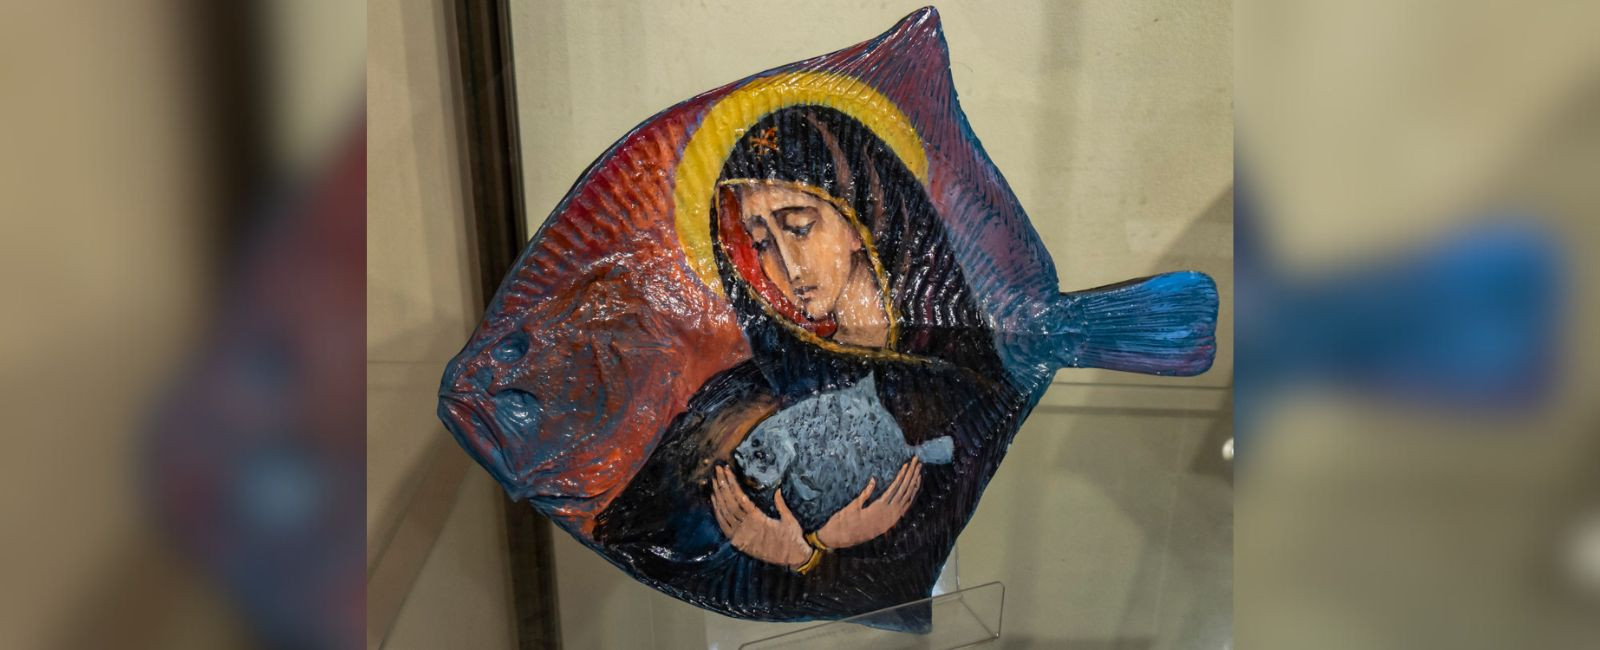 Чумацька ікона на рибі. Виставка херсонської художниці в Одесі